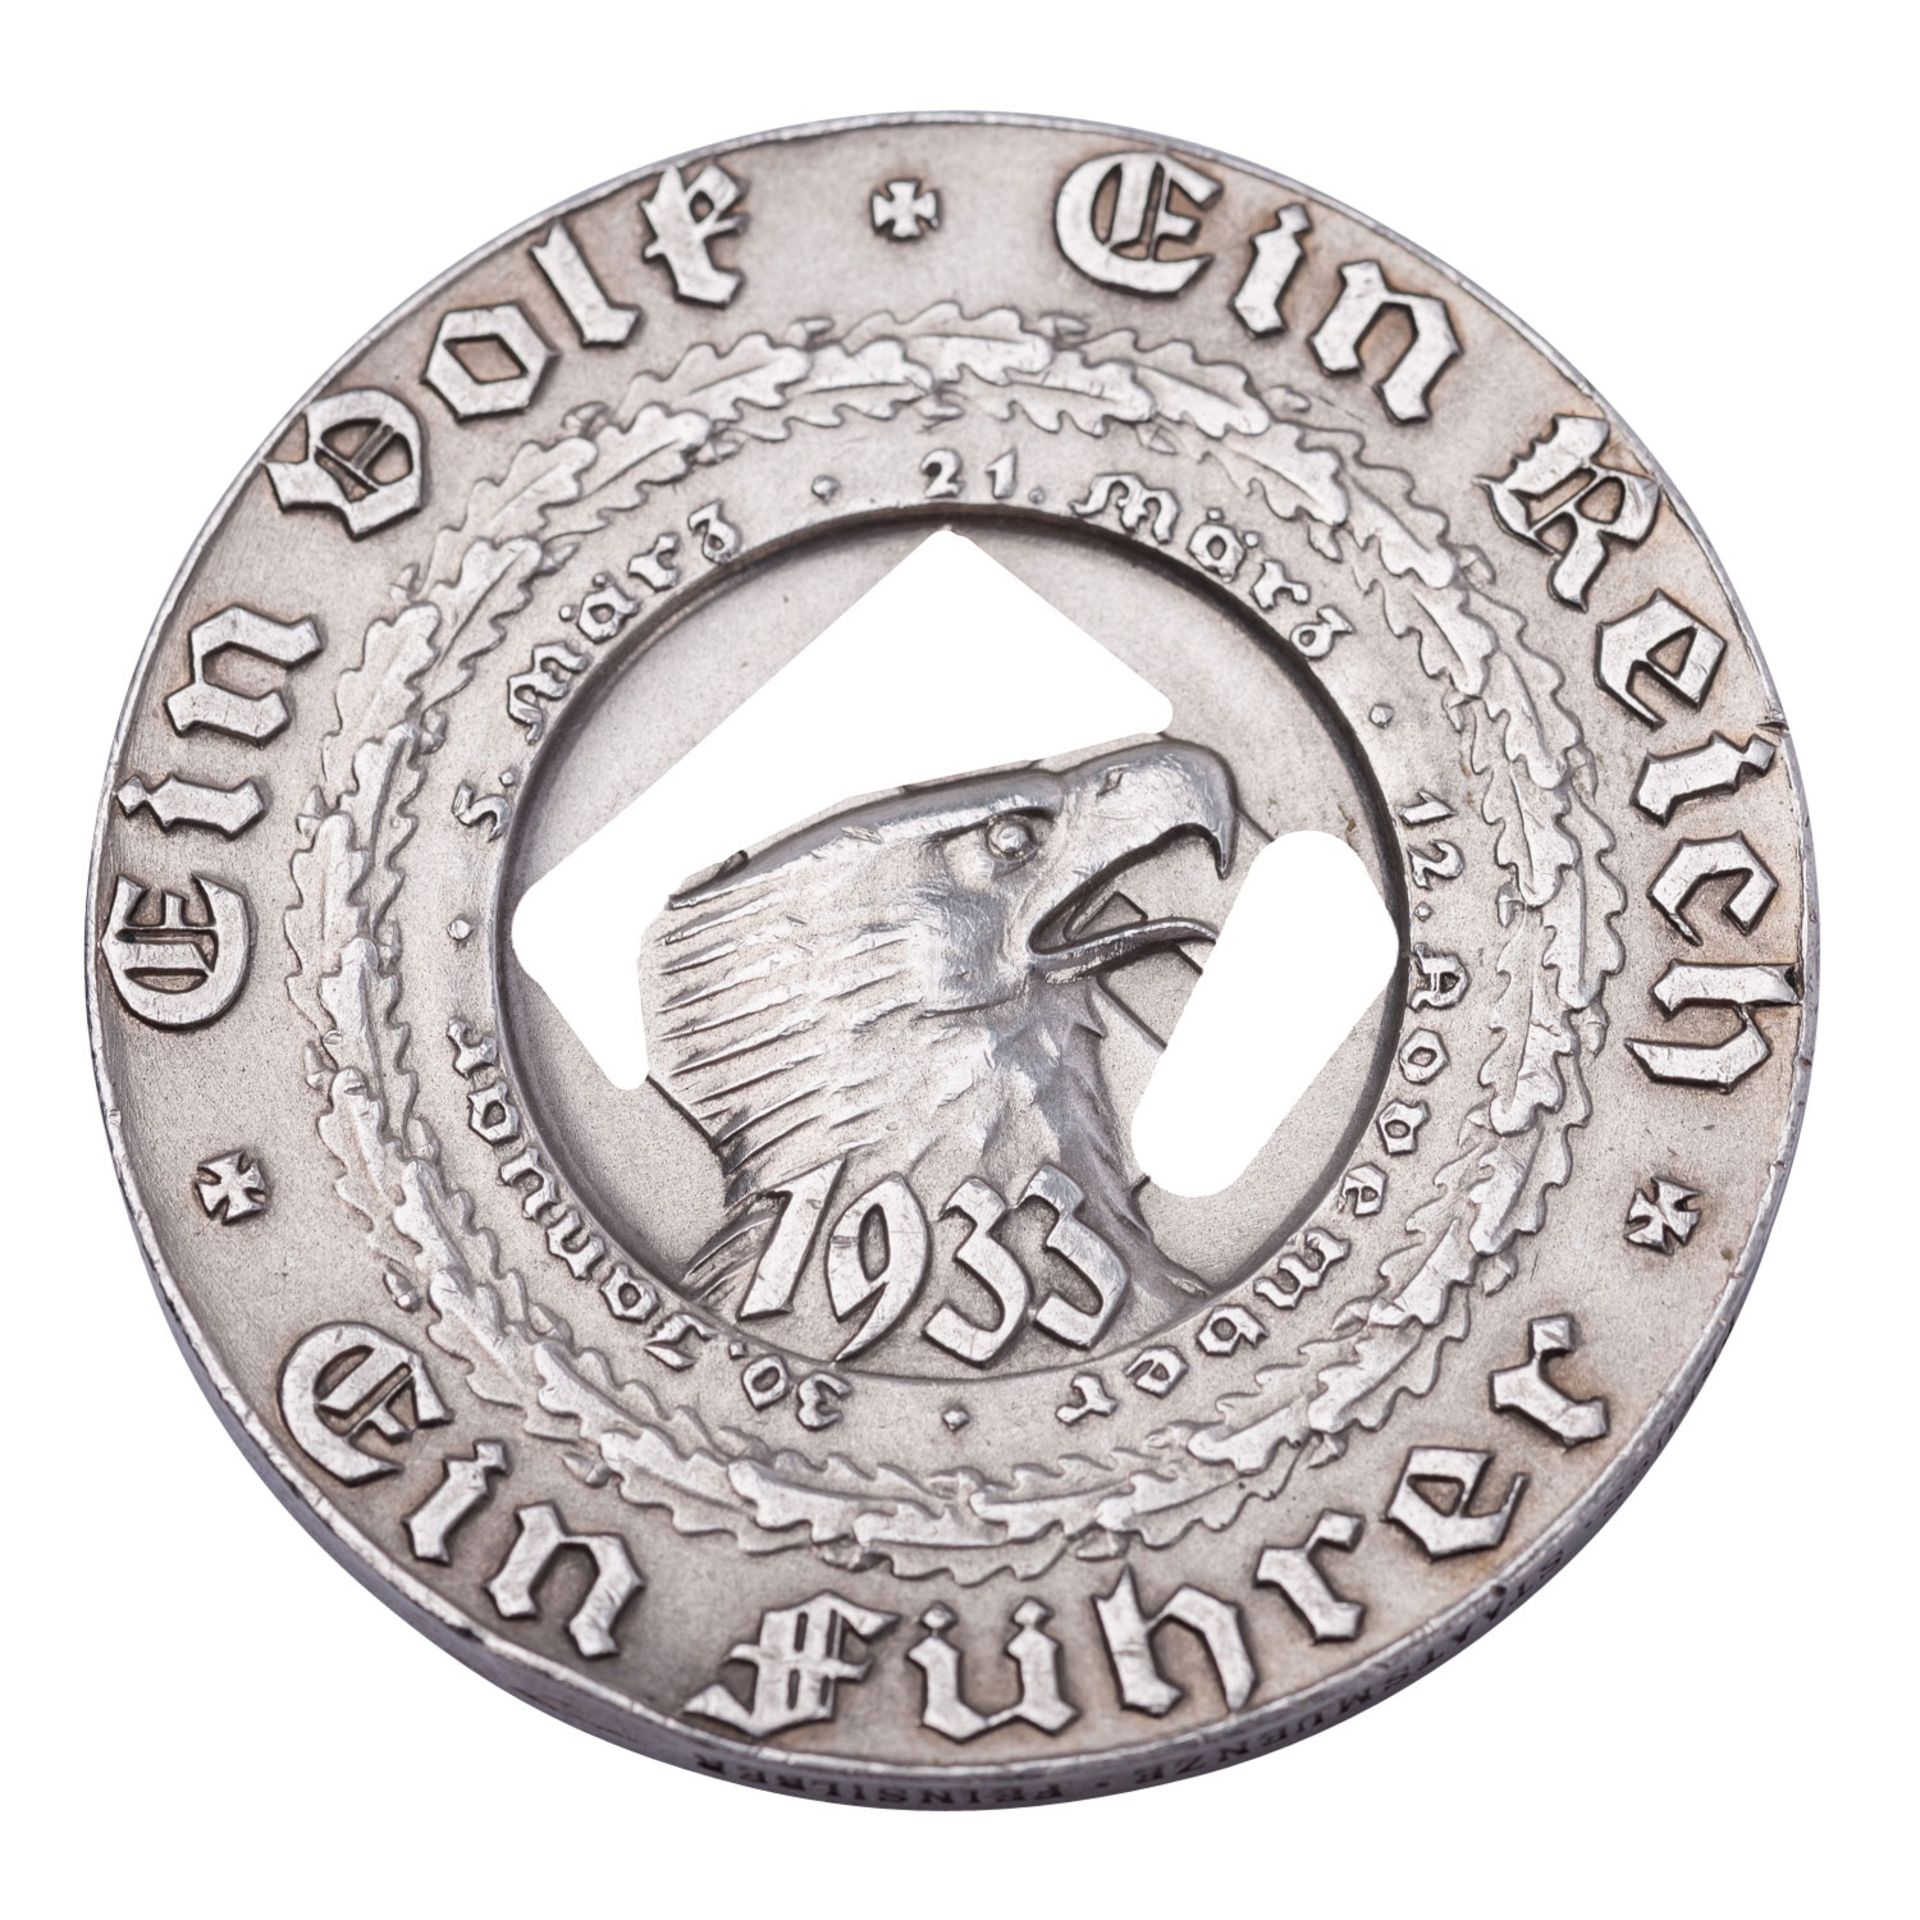 Deutschland 1933-34 - Silbermedaille 1933, auf Hitlers Machtergreifung, - Bild 2 aus 2